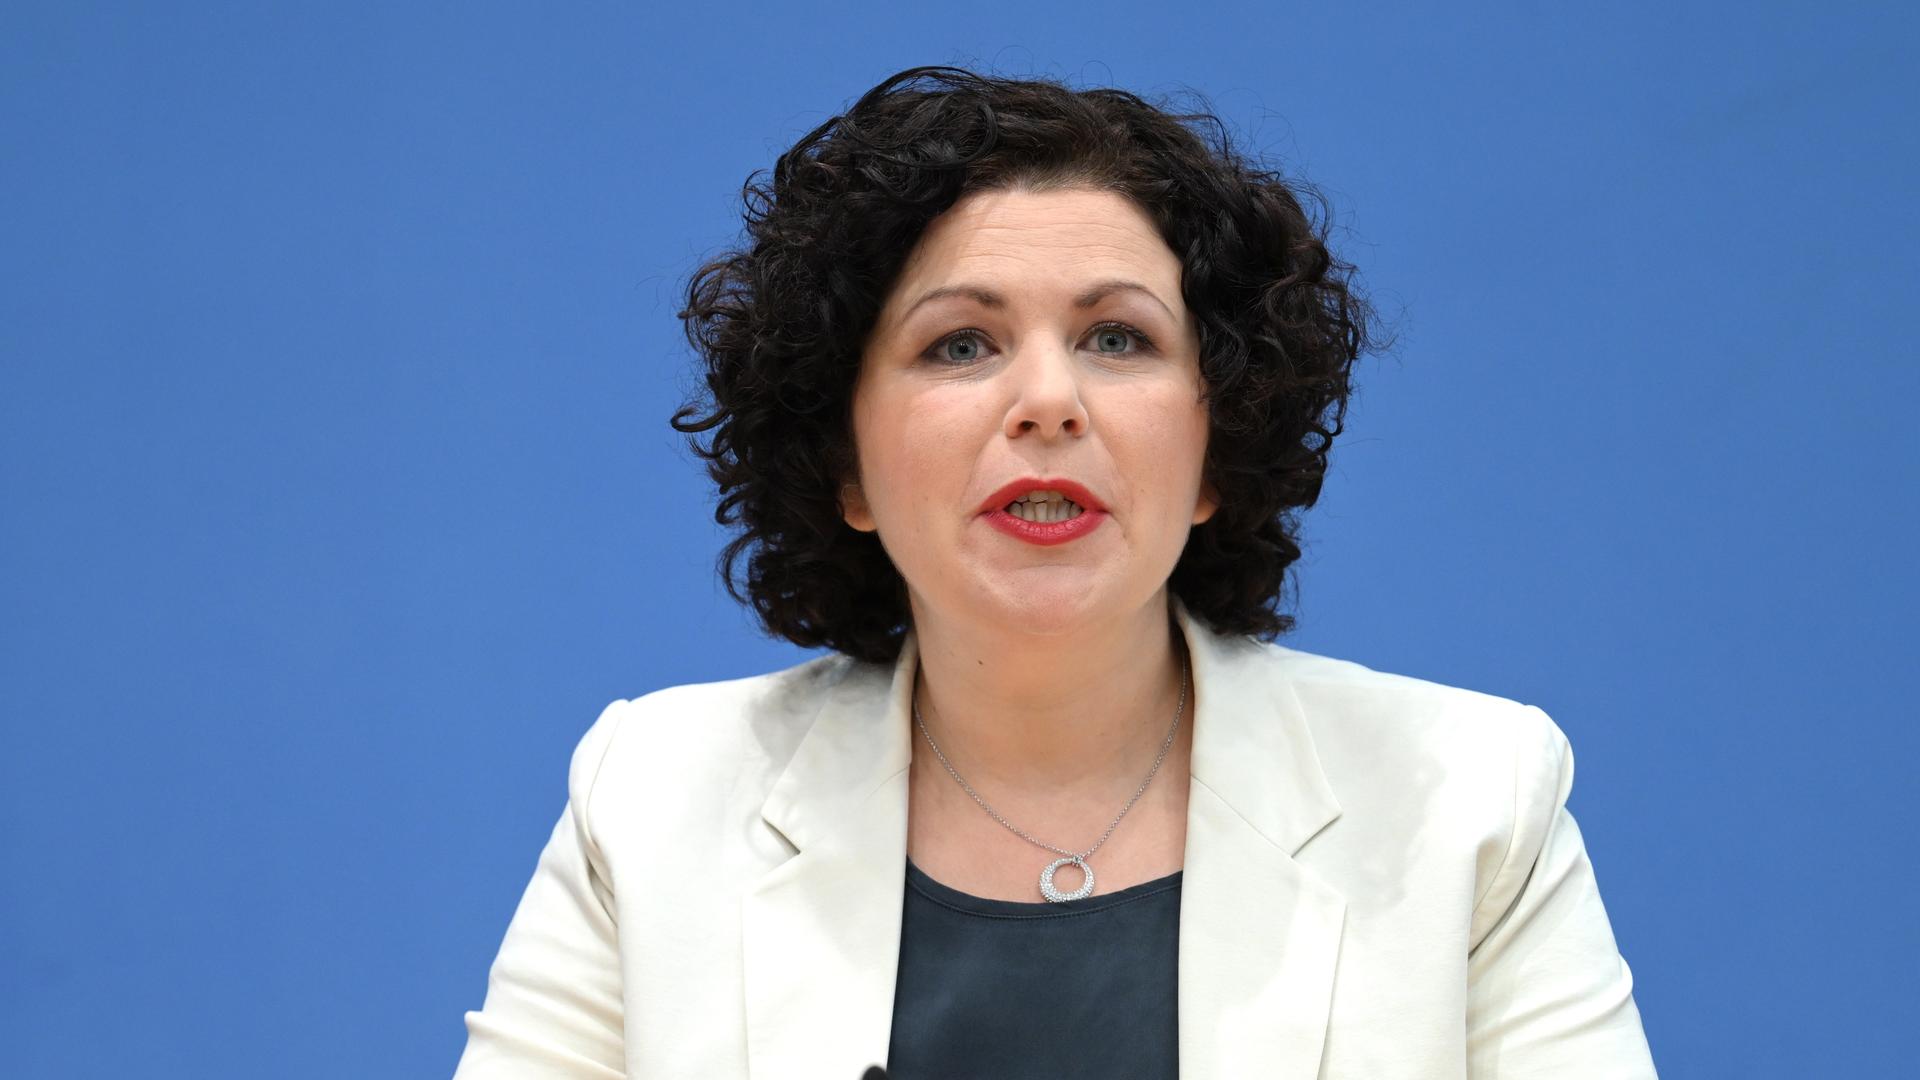 Amira Mohamed Ali, ehemalige Linken-Fraktionsvorsitzende im Bundestag, spricht während der Pressekonferenz zur Gründung des Vereins "Bündnis Sahra Wagenknecht - Für Vernunft und Gerechtigkeit". Der Verein ist bereits seit einigen Wochen registriert und gilt als Vorstufe zur Gründung einer eigenen Partei der Linken-Politikerin.